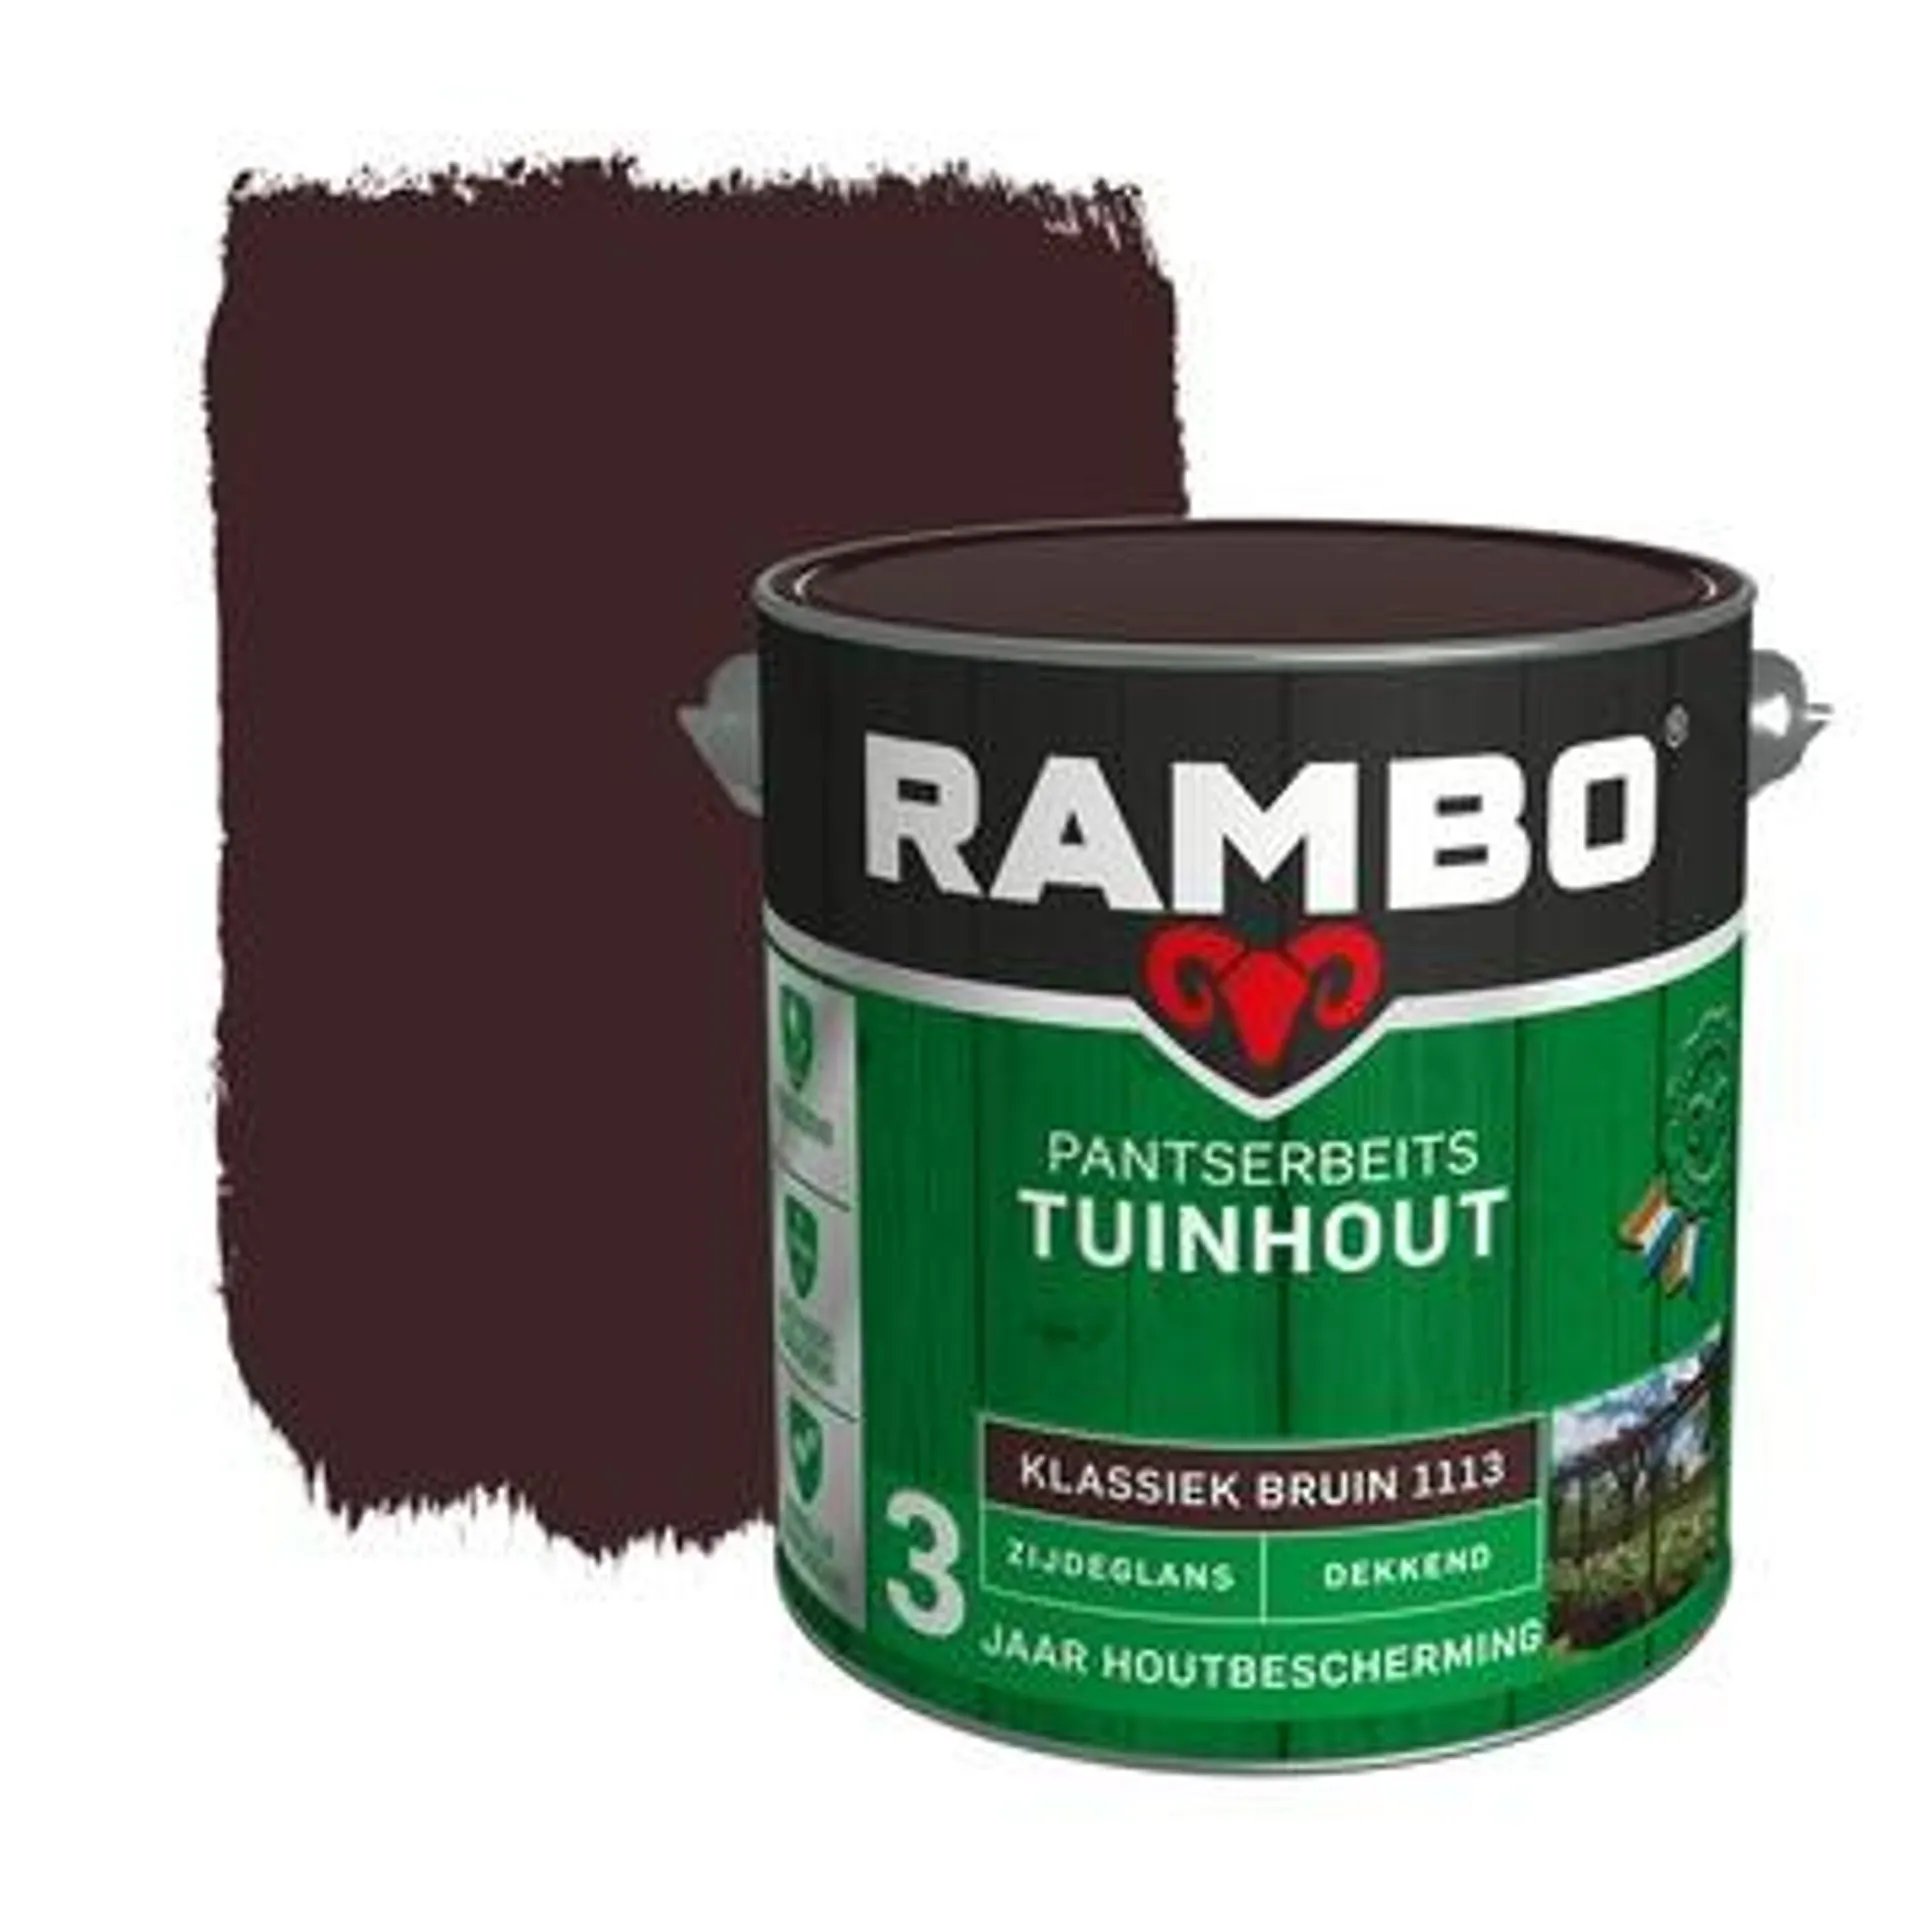 Rambo Pantserbeits Tuinhout zijdeglans klassiekbruin dekkend 2,5 l